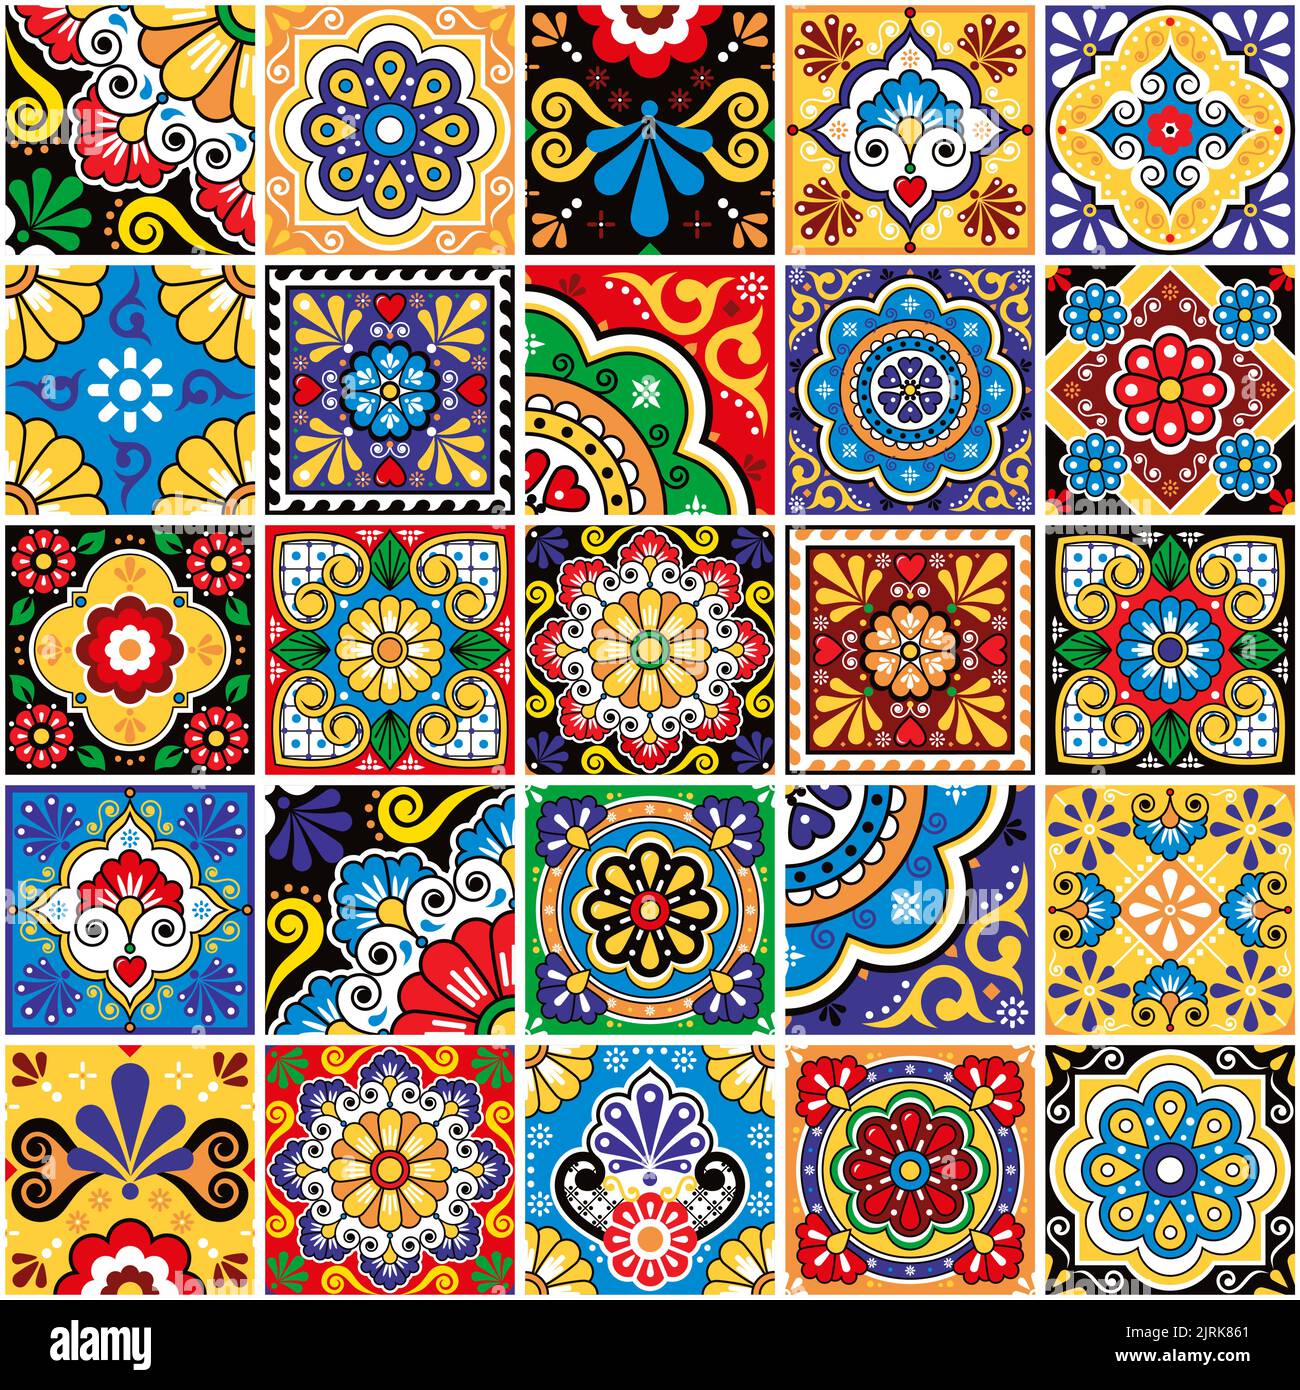 【ボトムス】 ALEXIA STAM - shelbey Mexican Tile ボトムスSの通販 by suuu16's shop